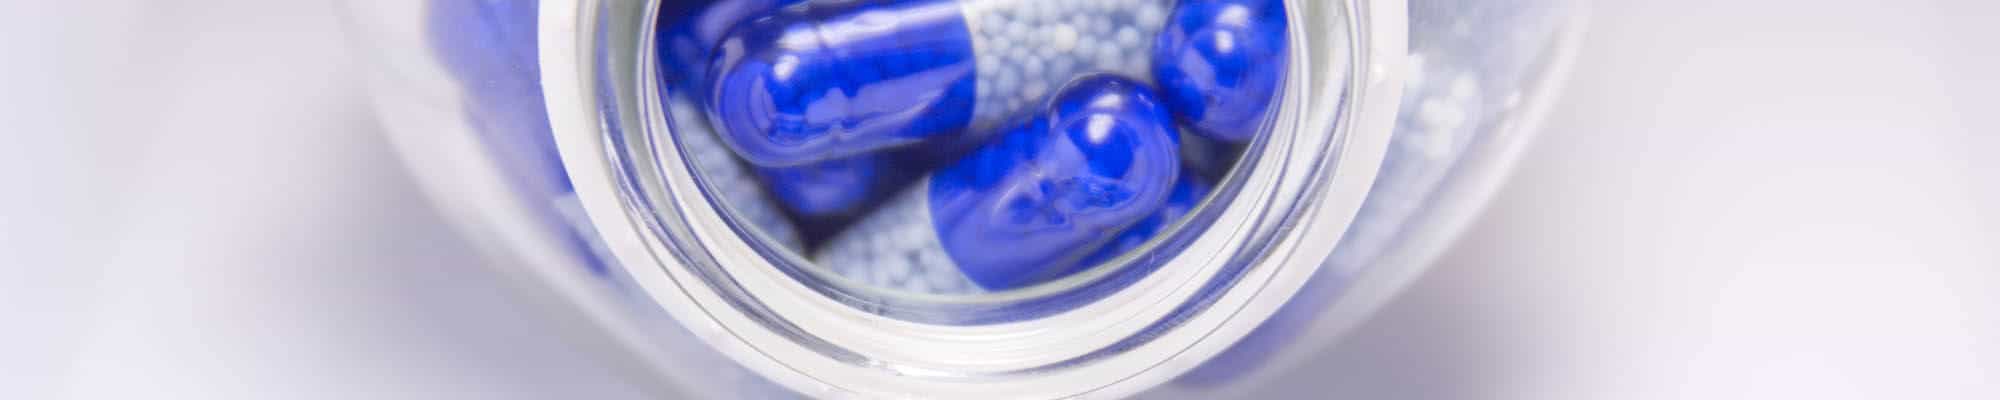 pill capsules in a jar